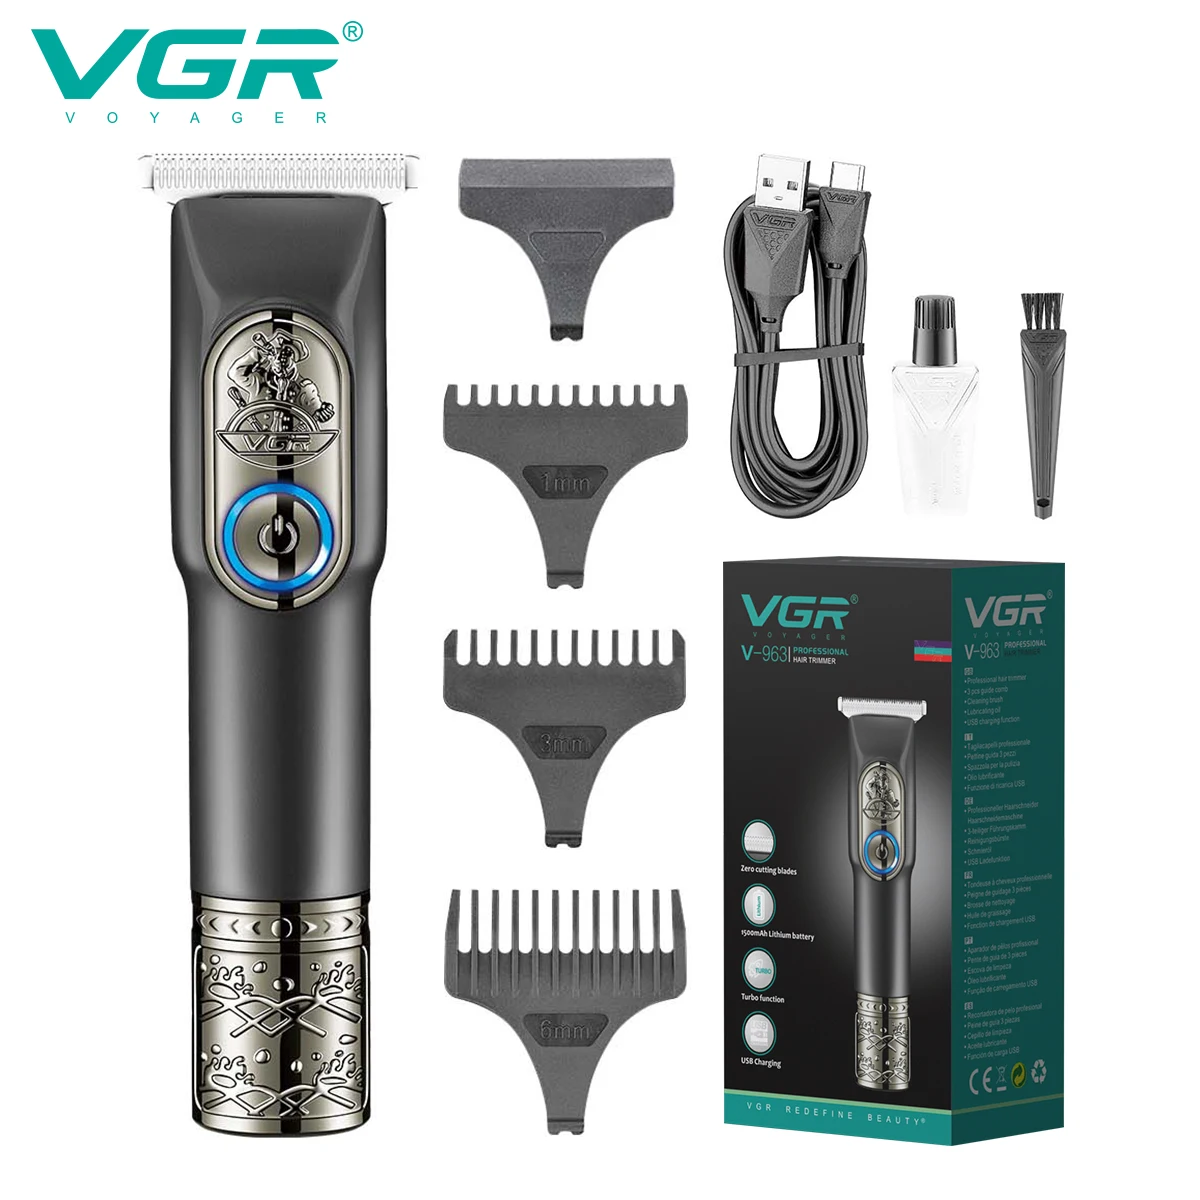 

VGR машинка для стрижки машинка для стрижки волос Машинки для стрижки волос Перезаряжаемый Стрижка волос беспроводной Триммер для волос Профессиональный Машинка для стрижки волос Винтаж Клипер для мужчин V-963